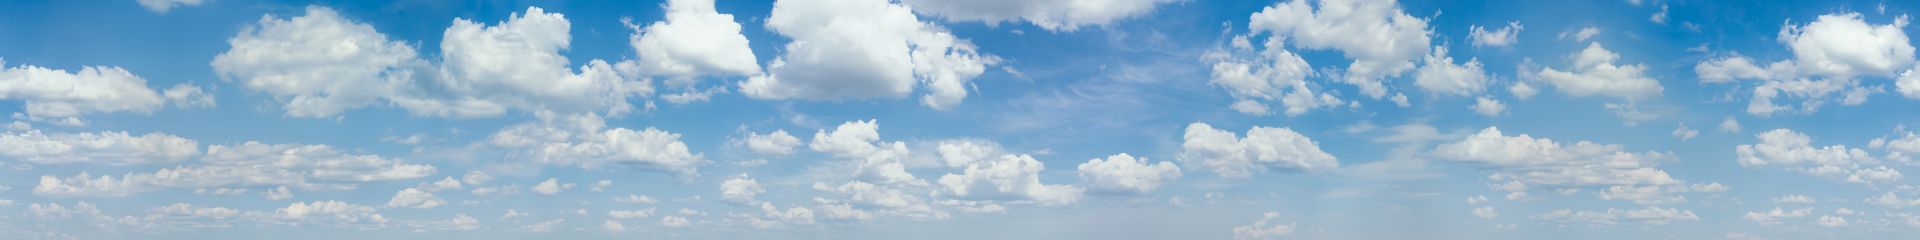 elriwa M4-H100-B - Hintergrundplatte aus PVC-Hartschaum 'Himmel mit Wolken', Höhe 100 cm, Bild B